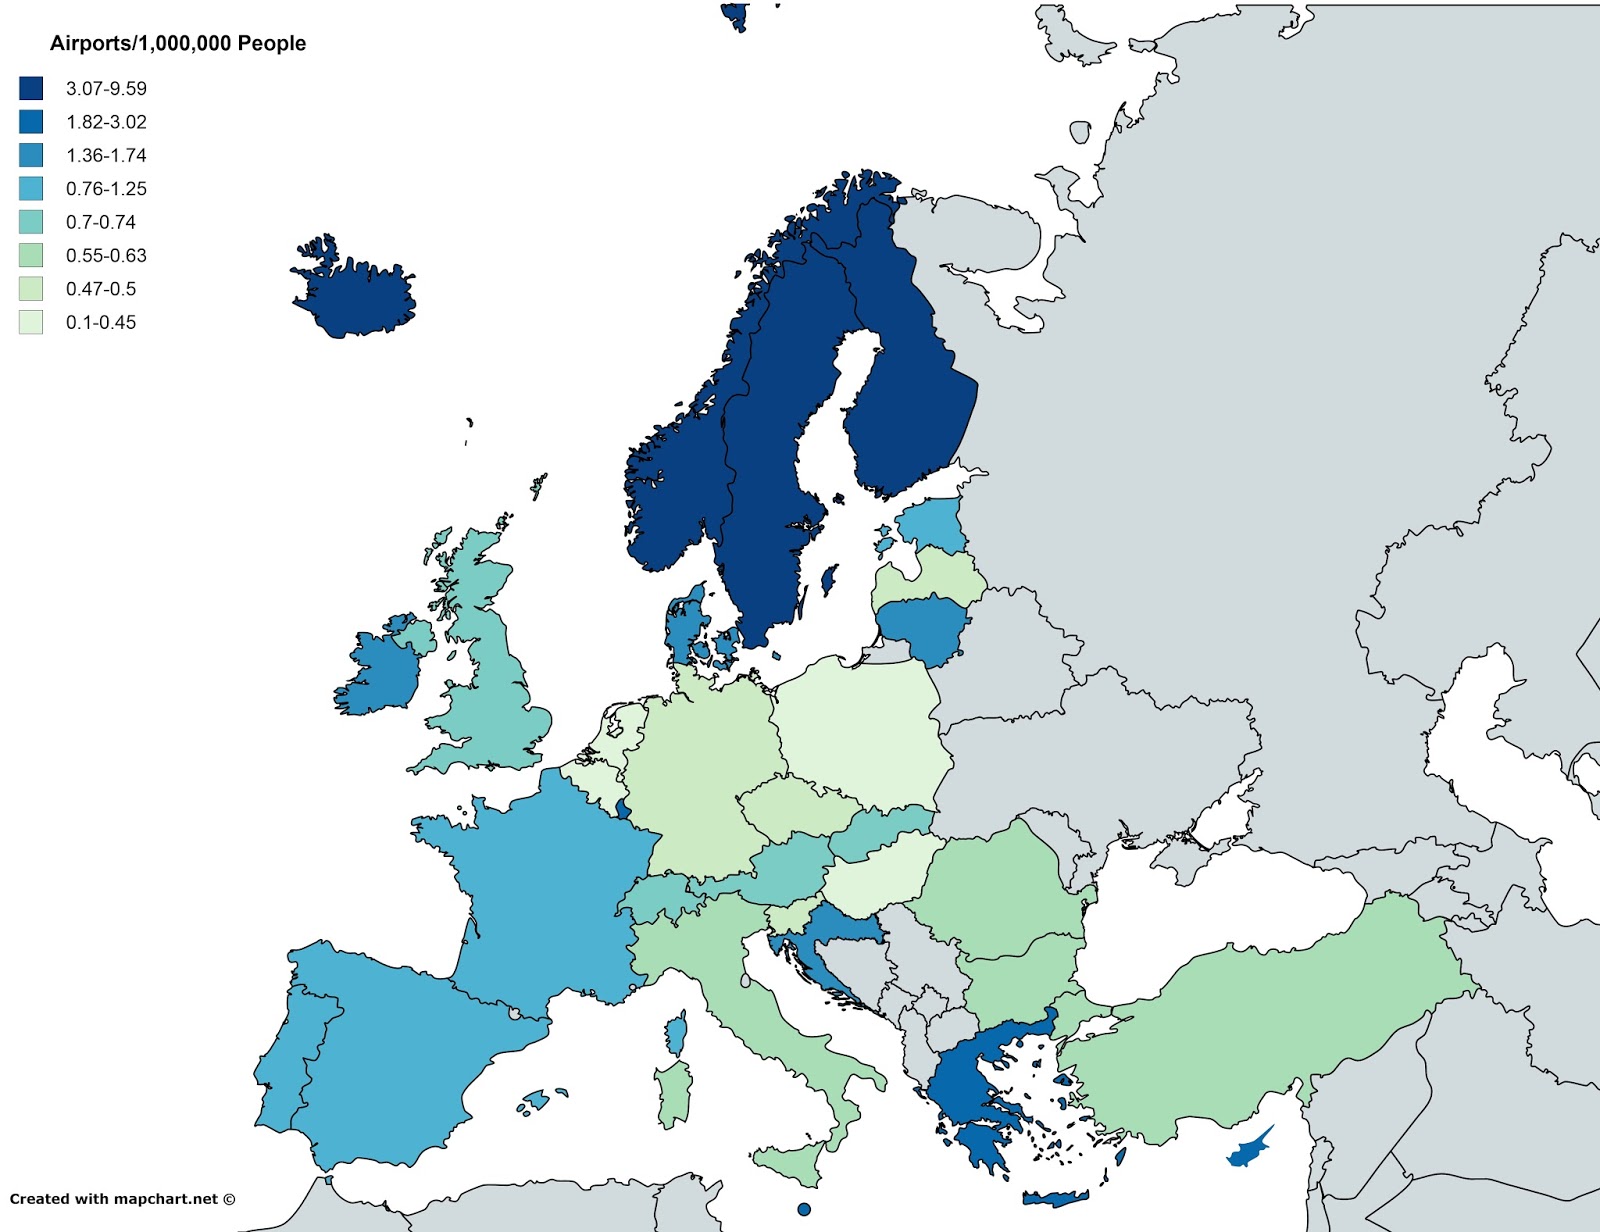 mappa concentrazione aeroporti in europa per milione di abitanti